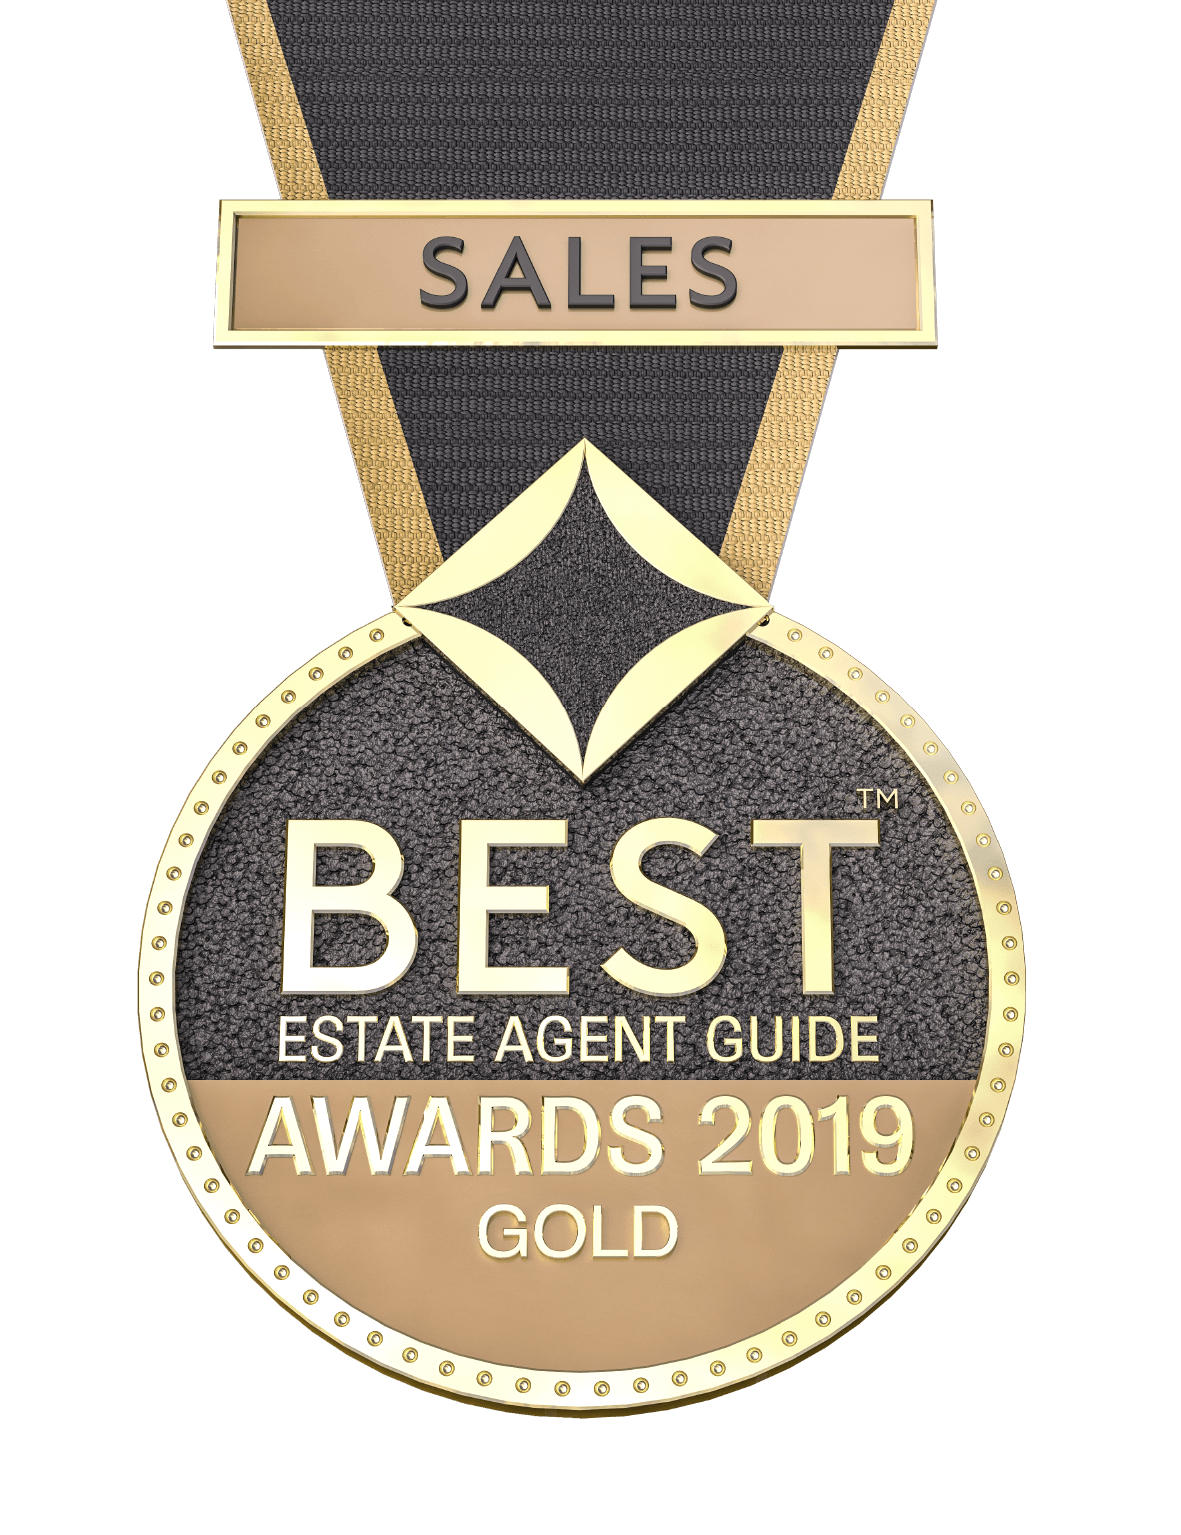 Wwwwww W Logo - Best Estate Agent Guide 2019 - Gold Sales